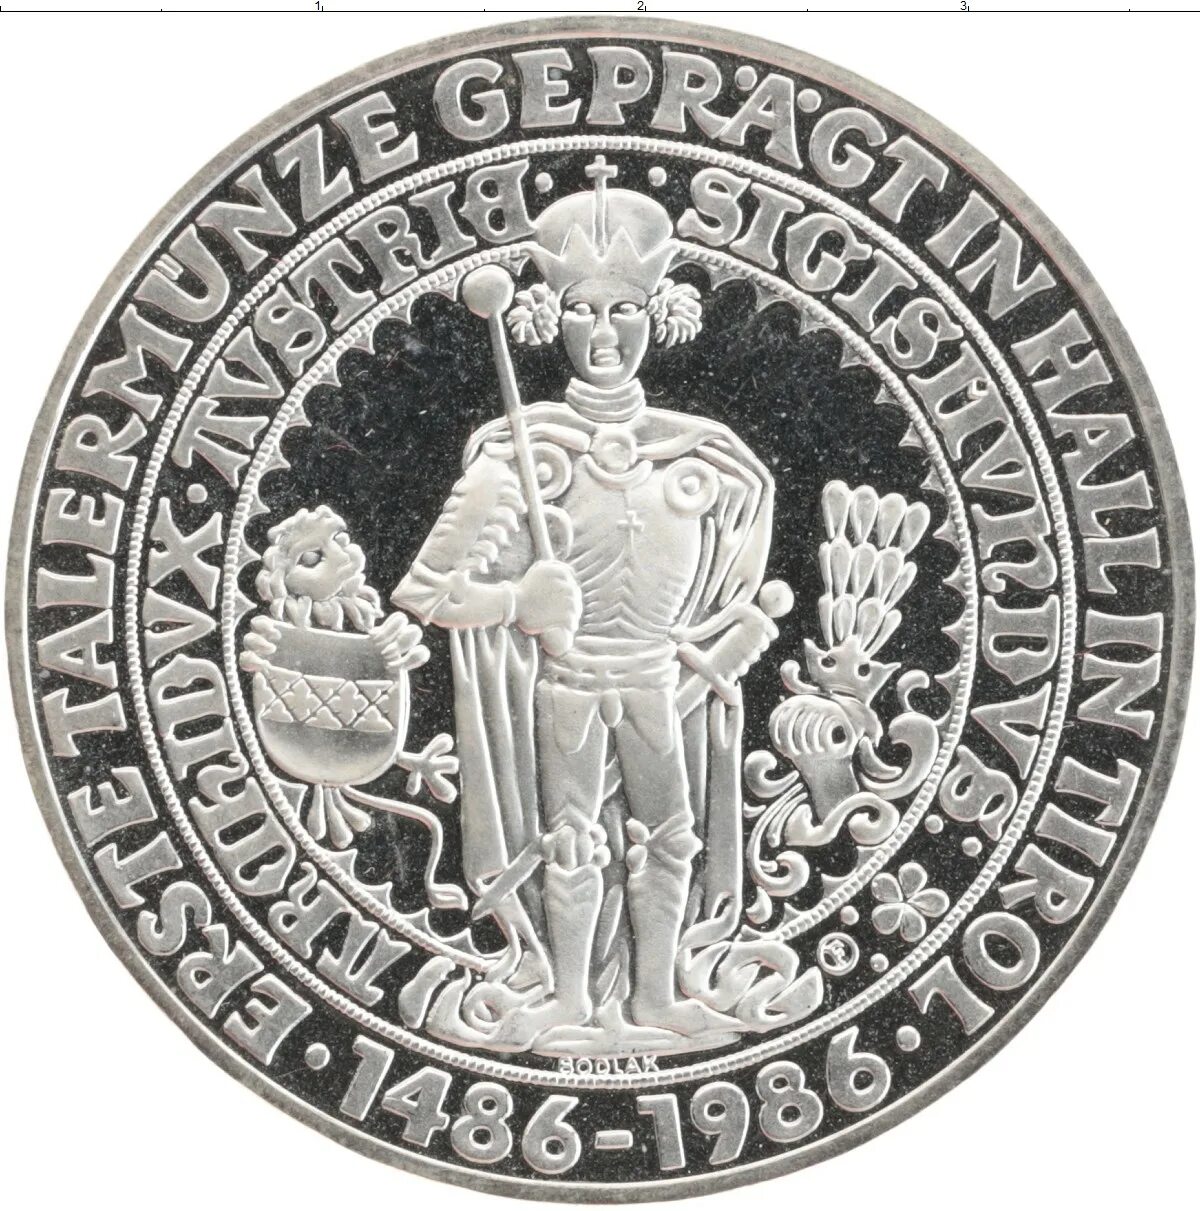 Австрия 5 шиллингов, 1986 пруф. 500 Австрийских шиллингов. Австрия 10 шиллингов 1986 года. Австрия 1 шиллинг 1986 год.